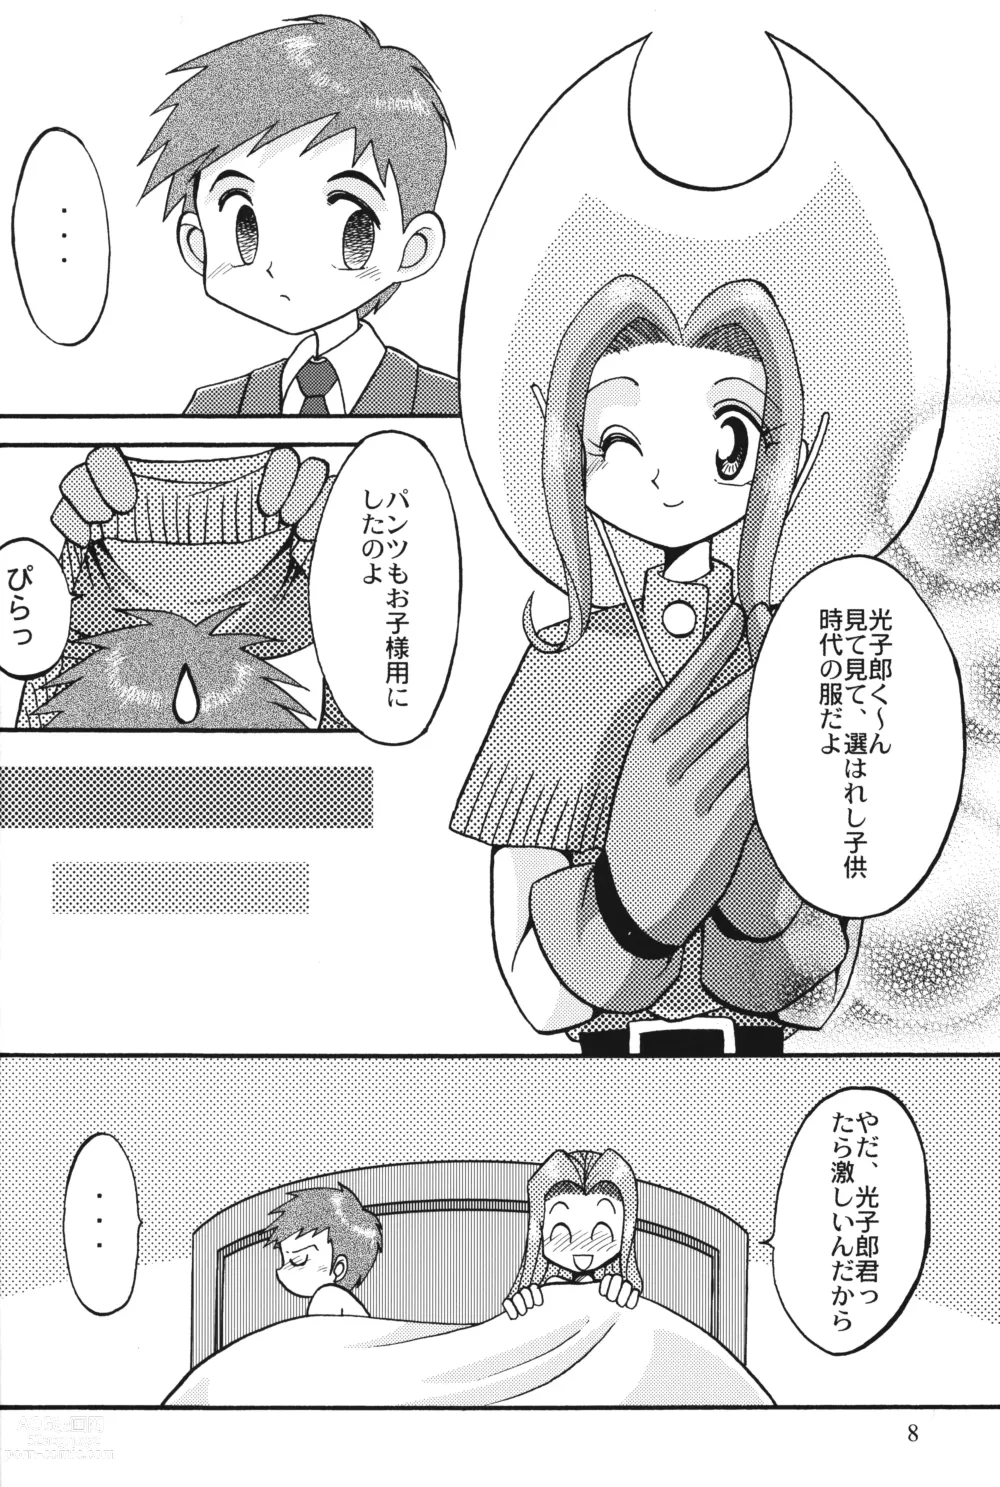 Page 7 of doujinshi Sora Mimi Hour 4